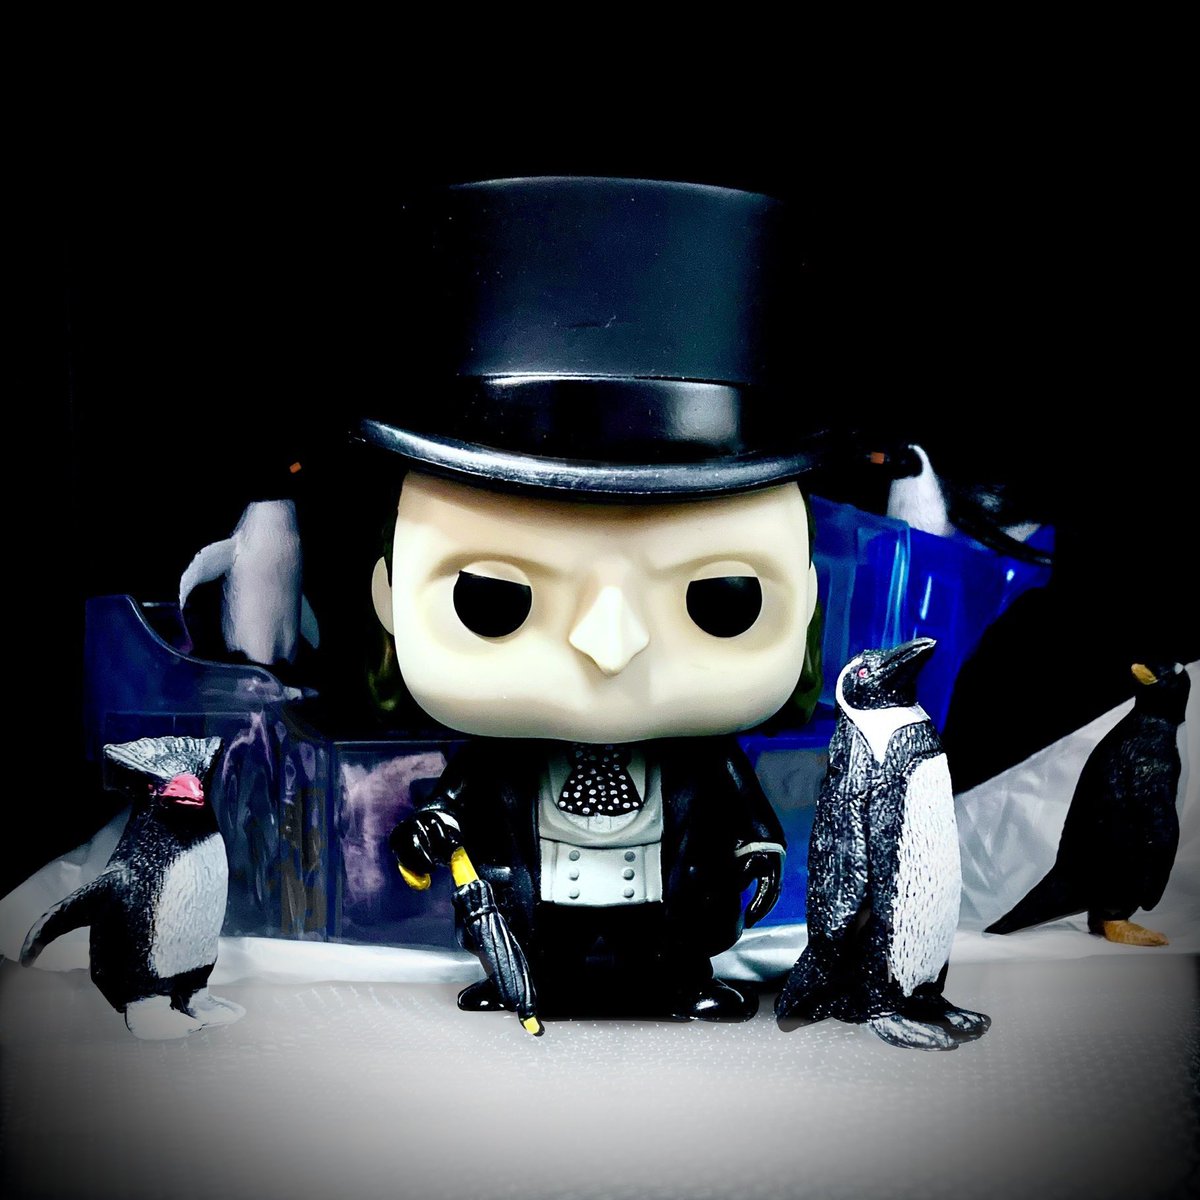 Penguin - Batman Returns
@OriginalFunko #Funko #BatmanReturns #ThePenguin #TimBurton #DannyDevito #FunkoFamily #FunkoPhotography #FunkoPop #FunkoPopVinyl #FunkoPops #FunkoFunatic #MyFunkoStory #funkocollection #funkocollector #FunkoCommunity #FunkoFriends #OswaldCobblepot